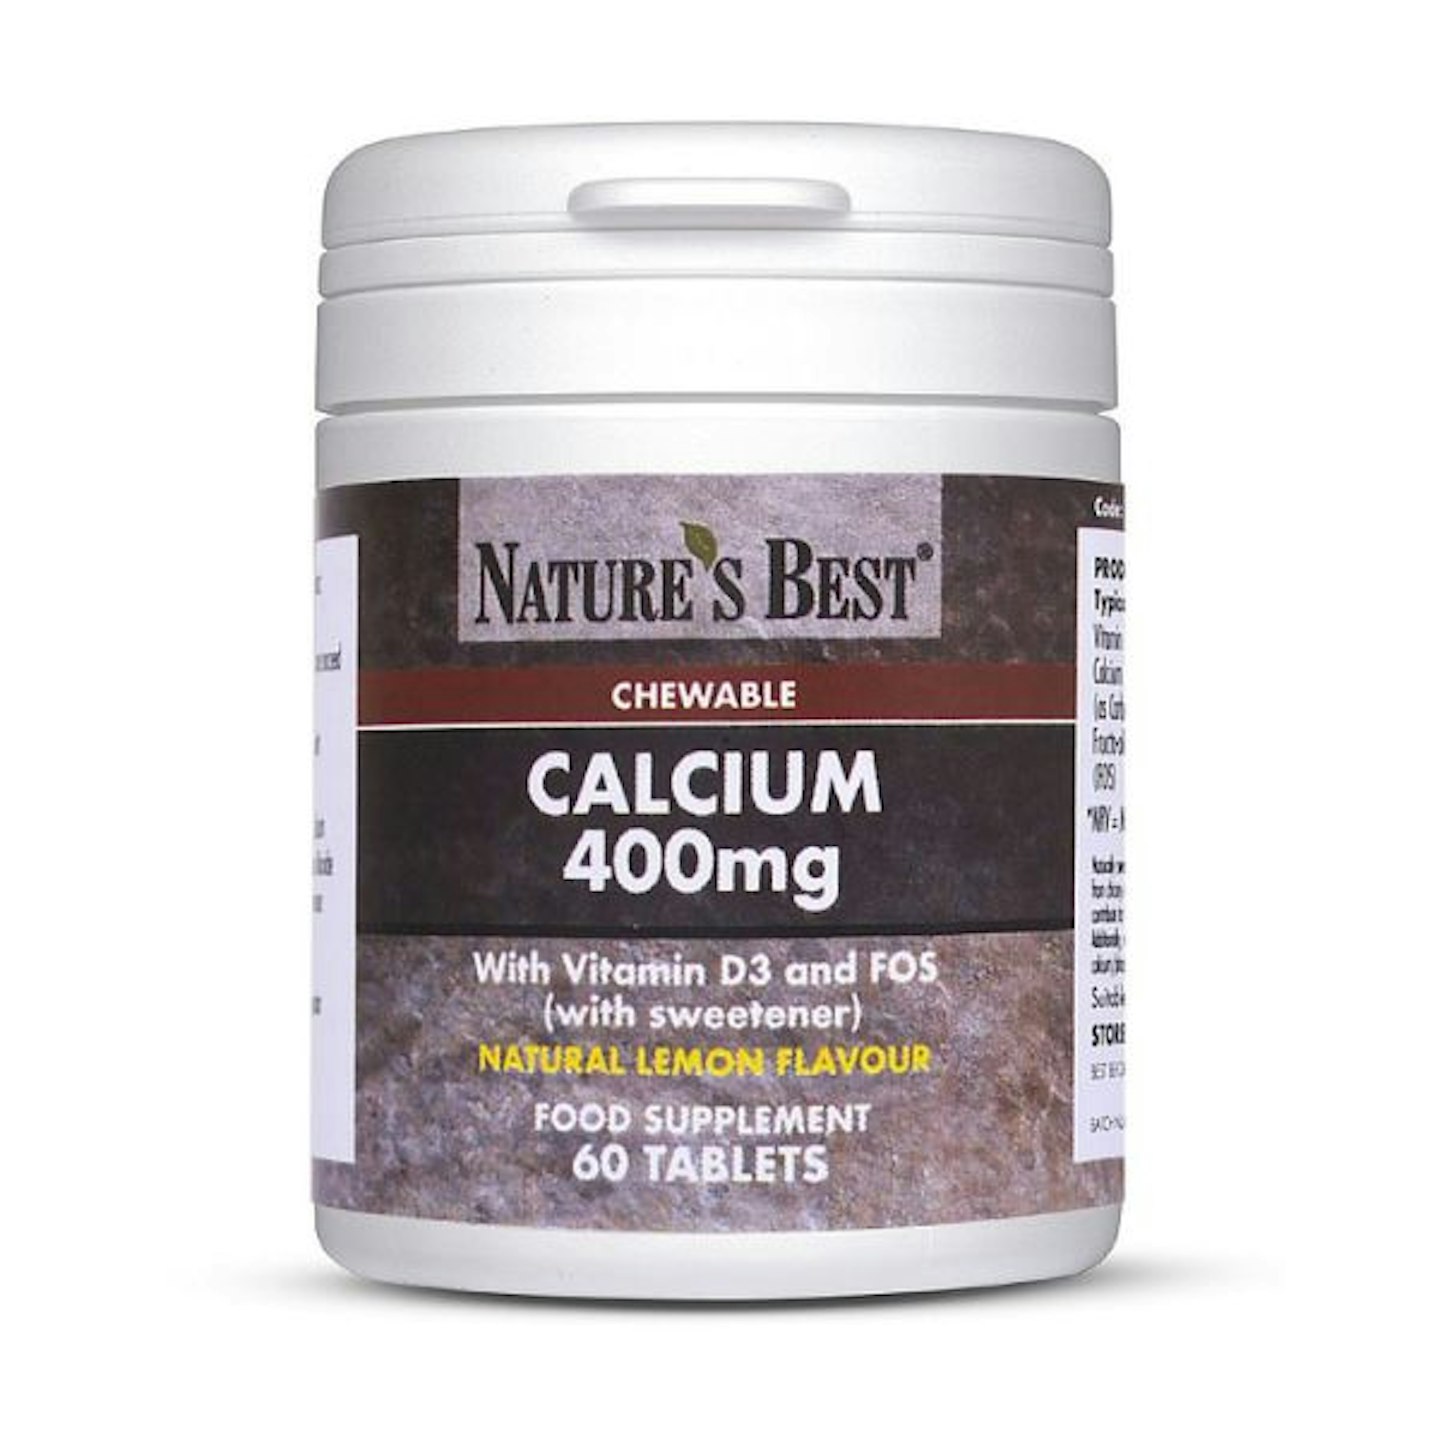 Vitabotics Calcium Supplements 